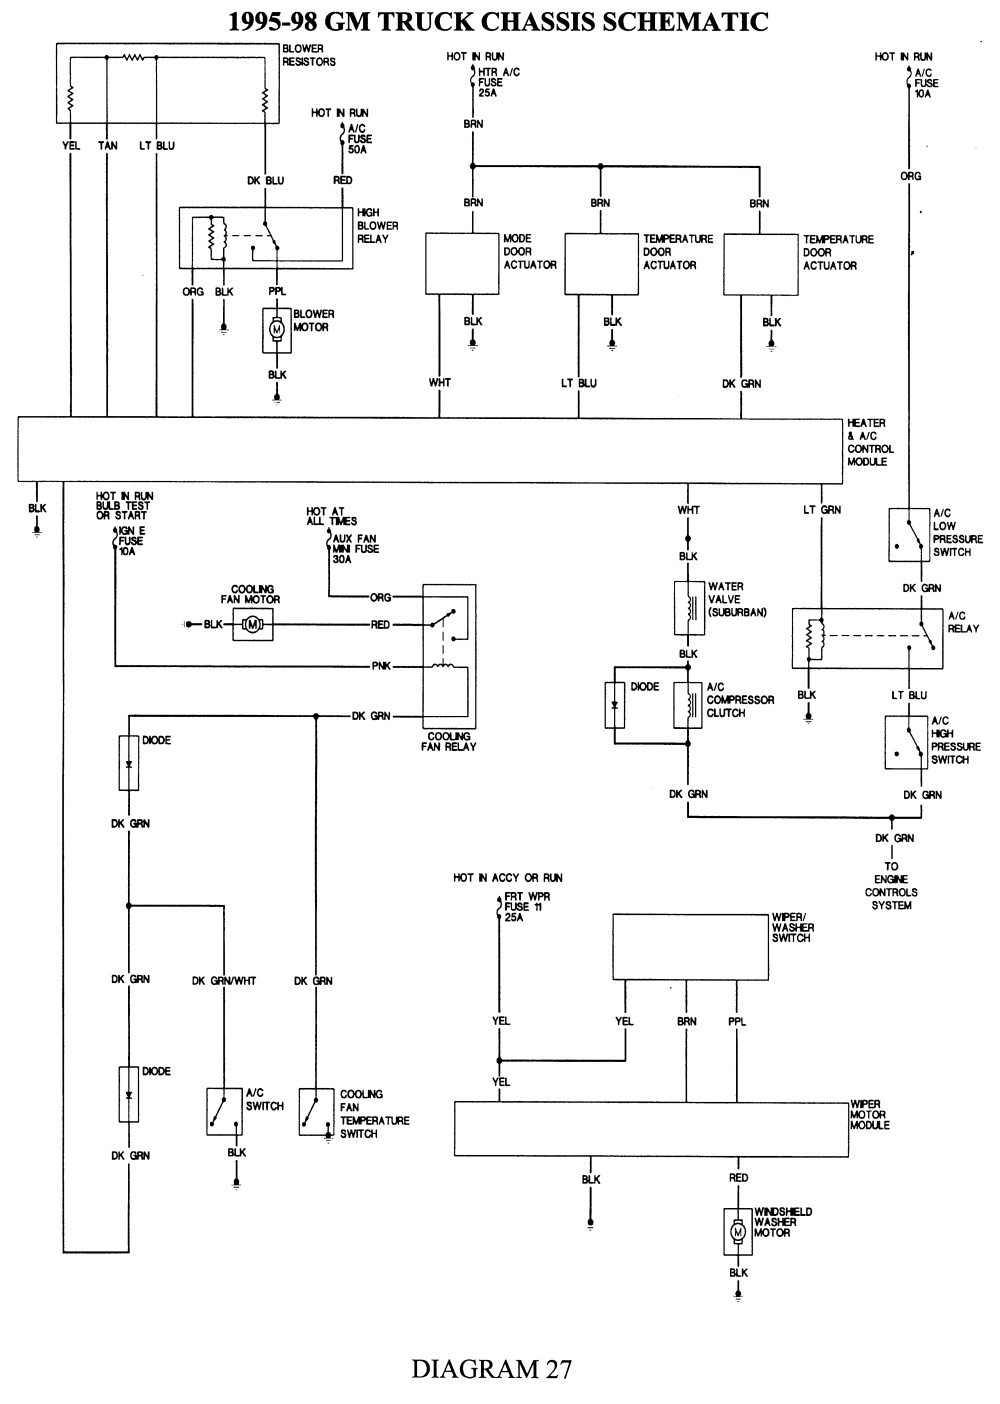 2004 Chevy Silverado Blower Motor Resistor Wiring Diagram